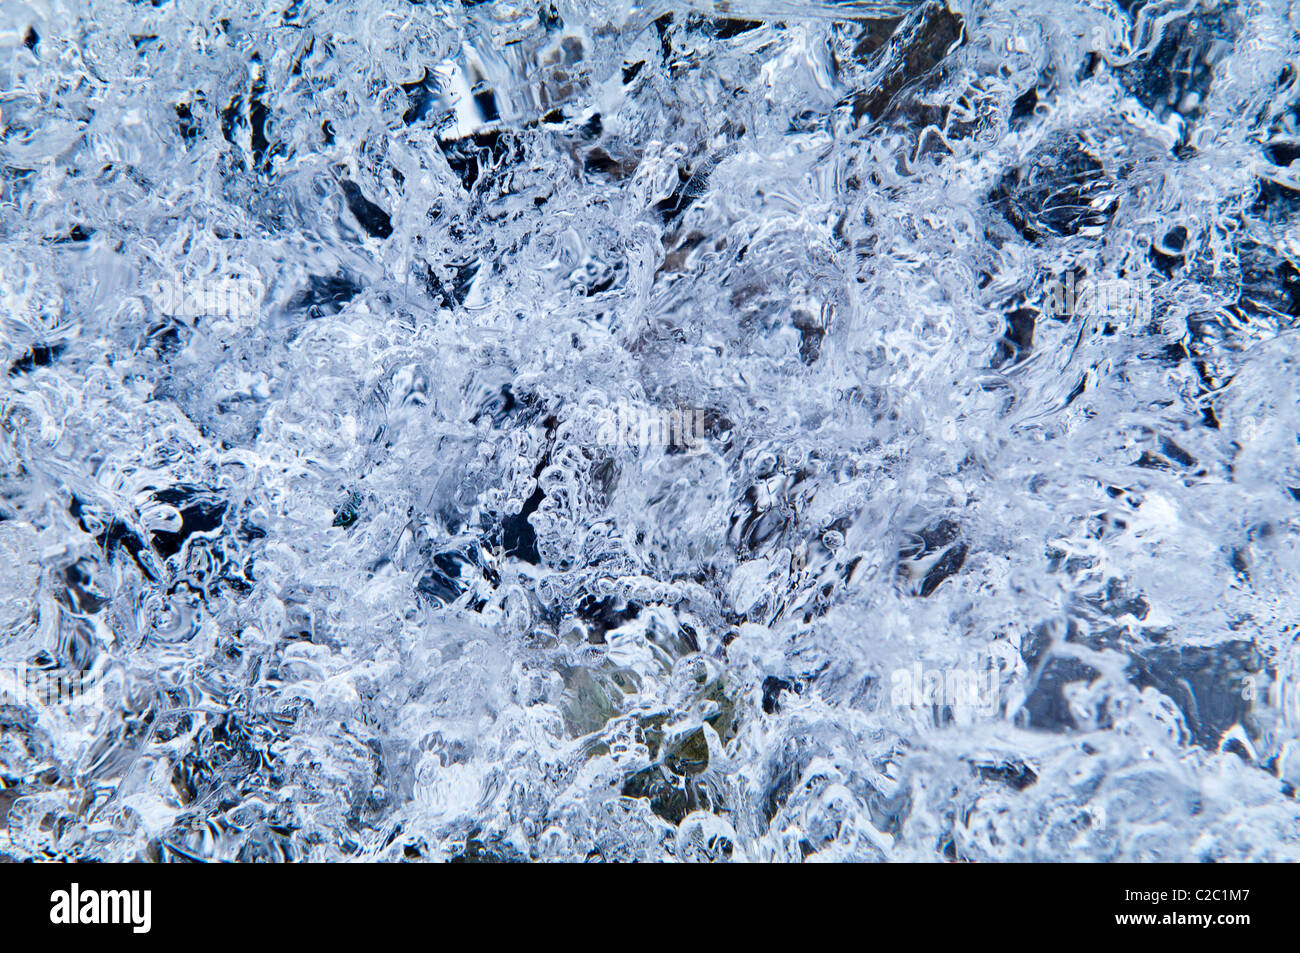 Mosaik Muster von Luftblasen eingeschlossen in einem Eisblock transparent. Stockfoto